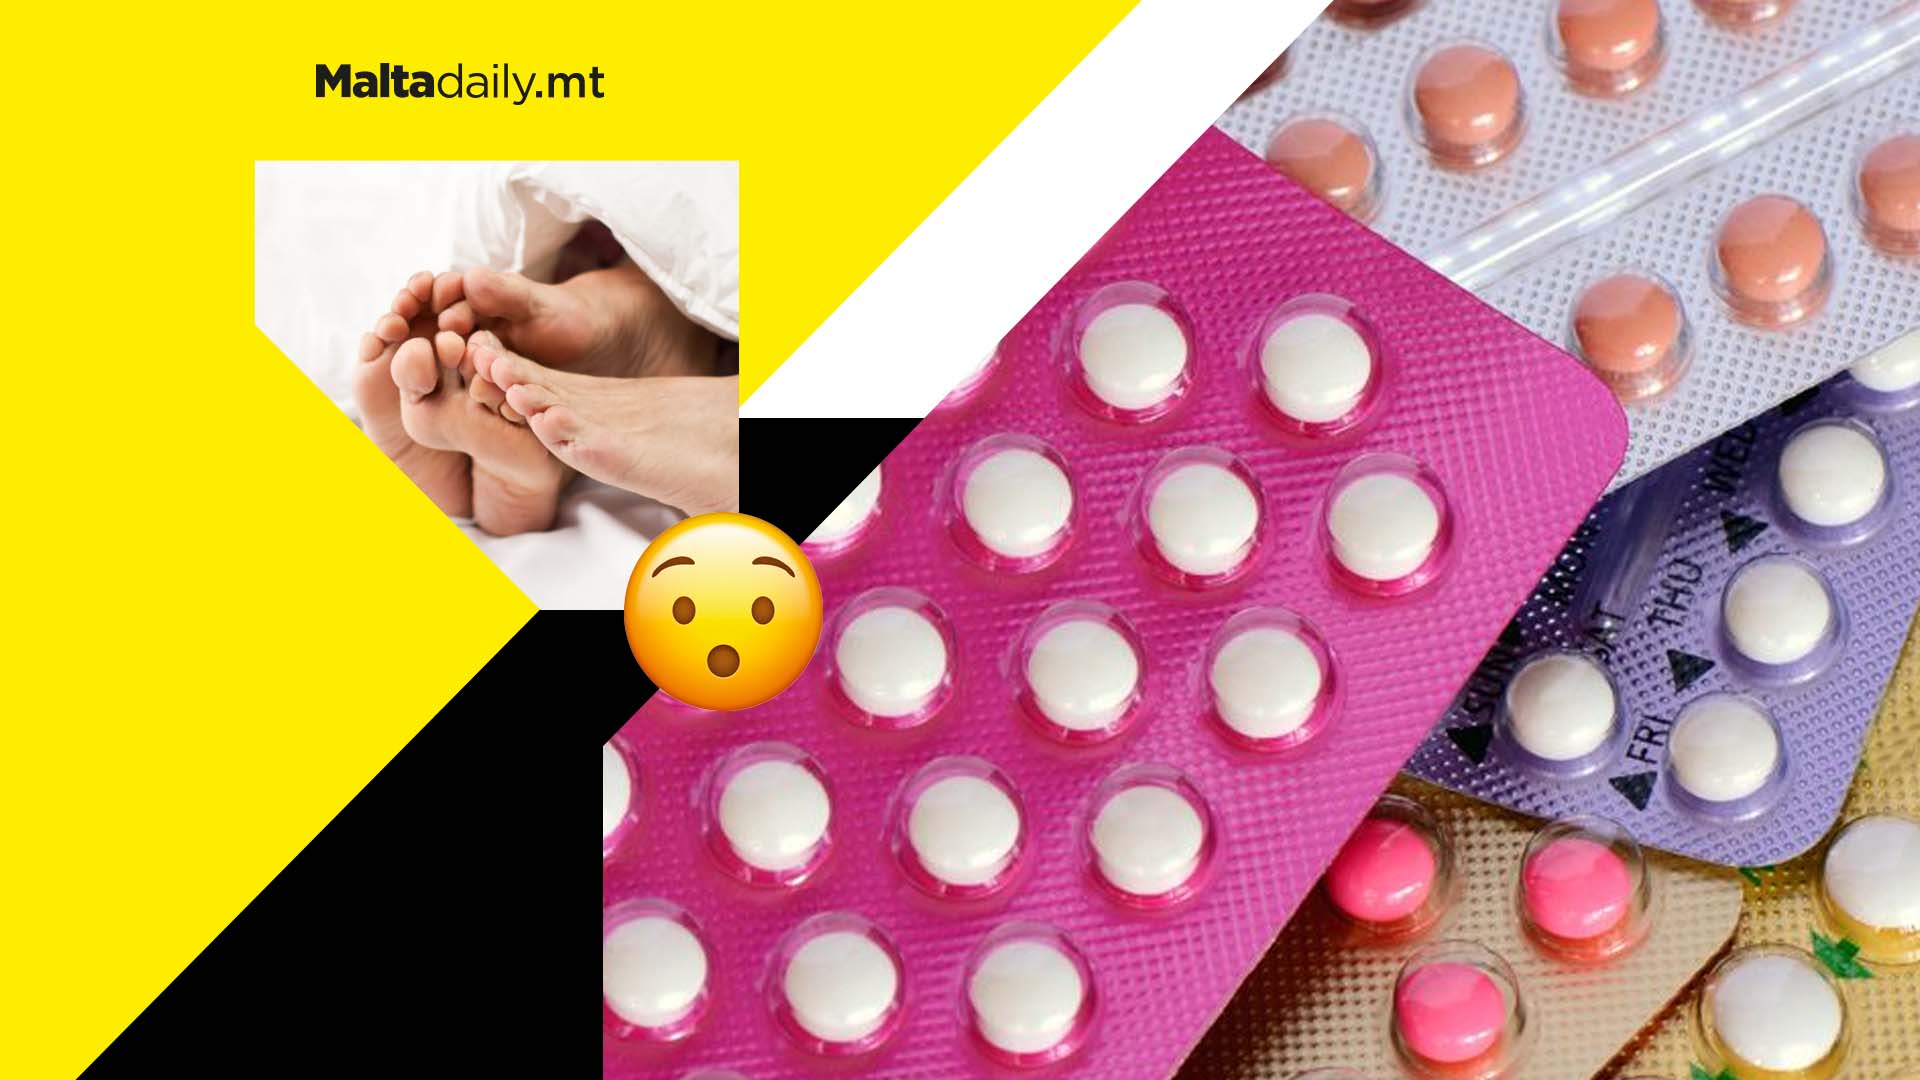 Male contraceptive pill 99% effective at preventing pregnancy